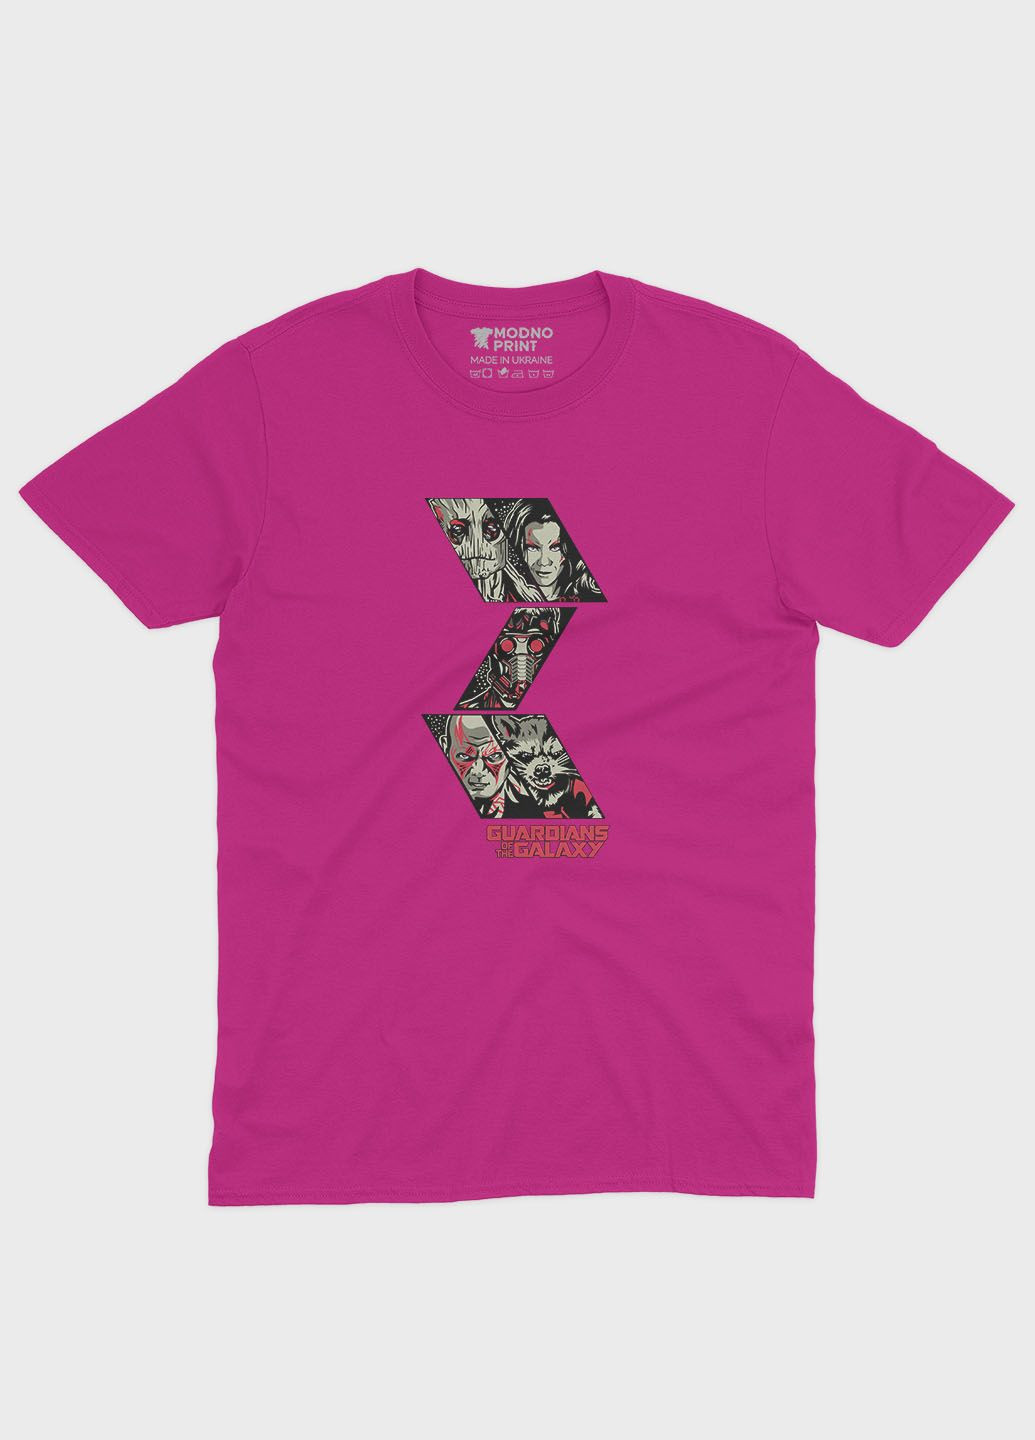 Рожева демісезонна футболка для хлопчика з принтом супергероїв - вартові галактики (ts001-1-fuxj-006-017-010-b) Modno